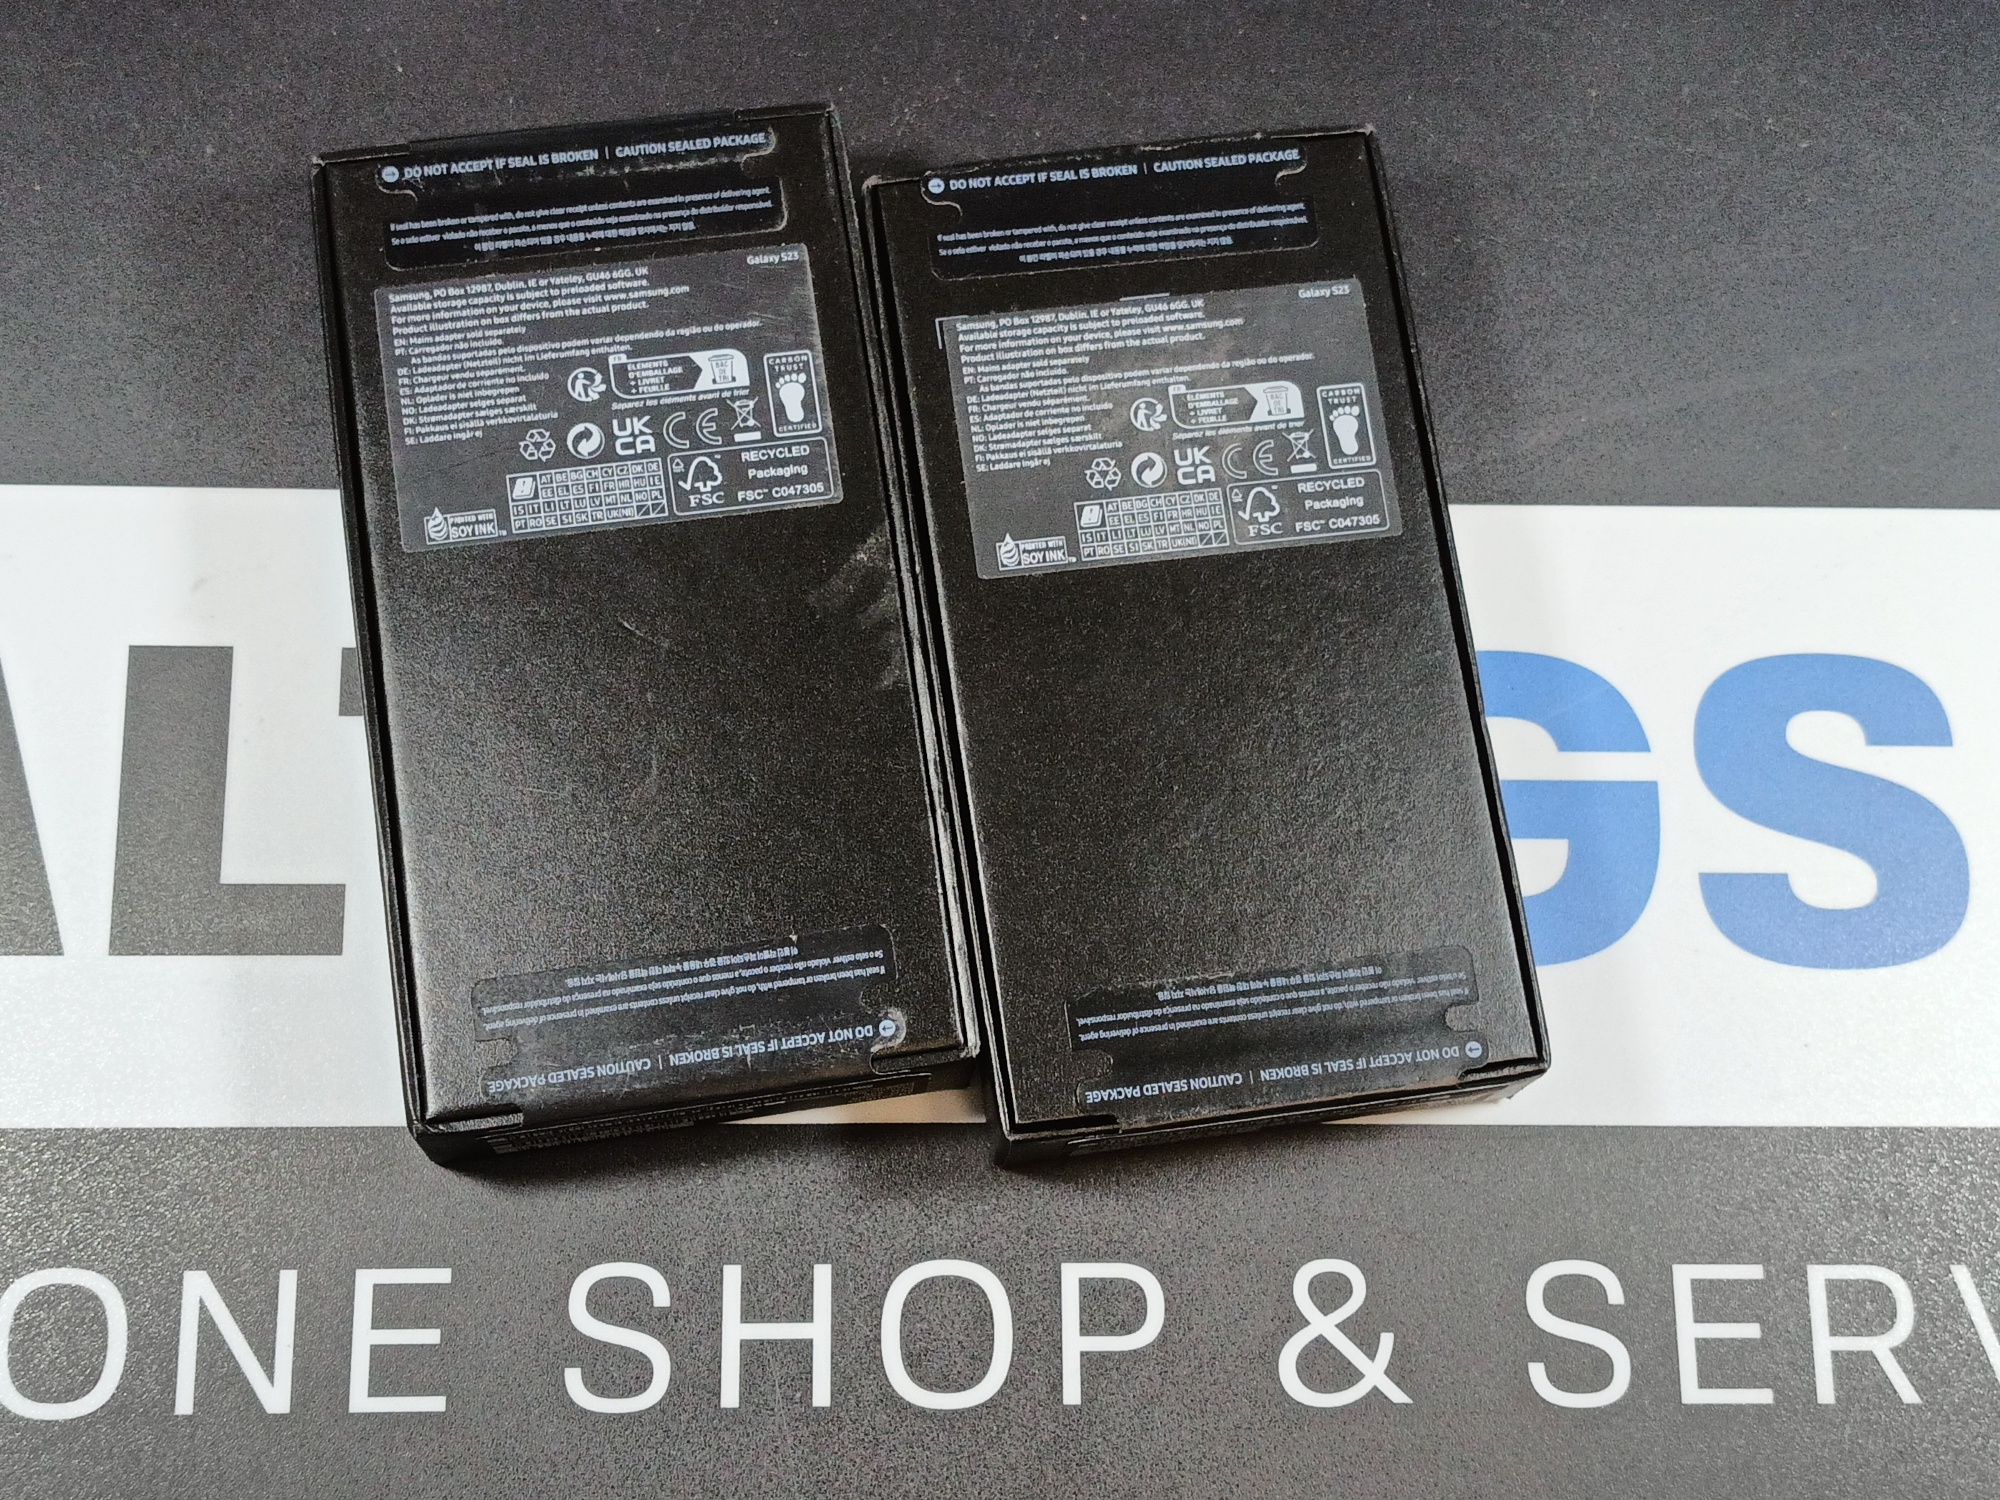 Sklep nowy Samsung Galaxy S23 8gb 256gb Black